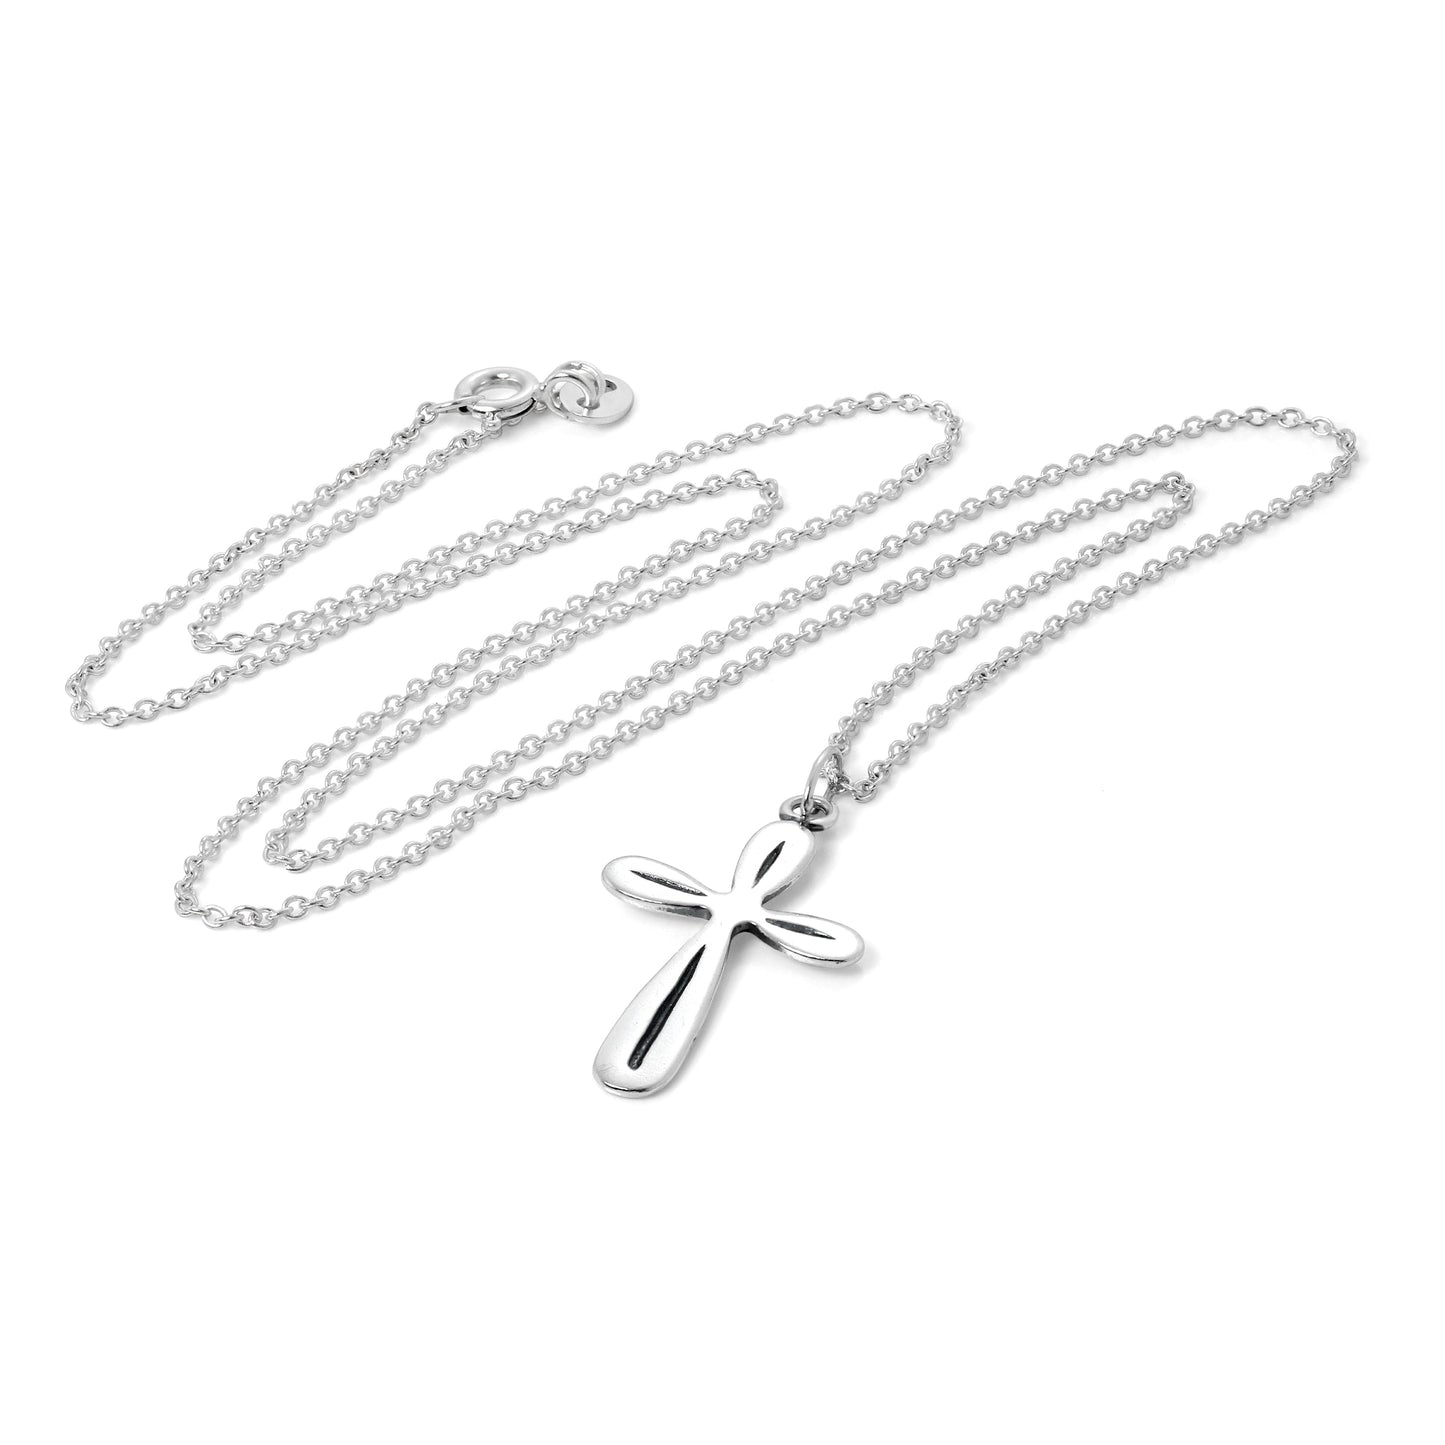 Sterlingsilber Gerundet Kreuz Anhänger Halskette 40,5 - 56cm